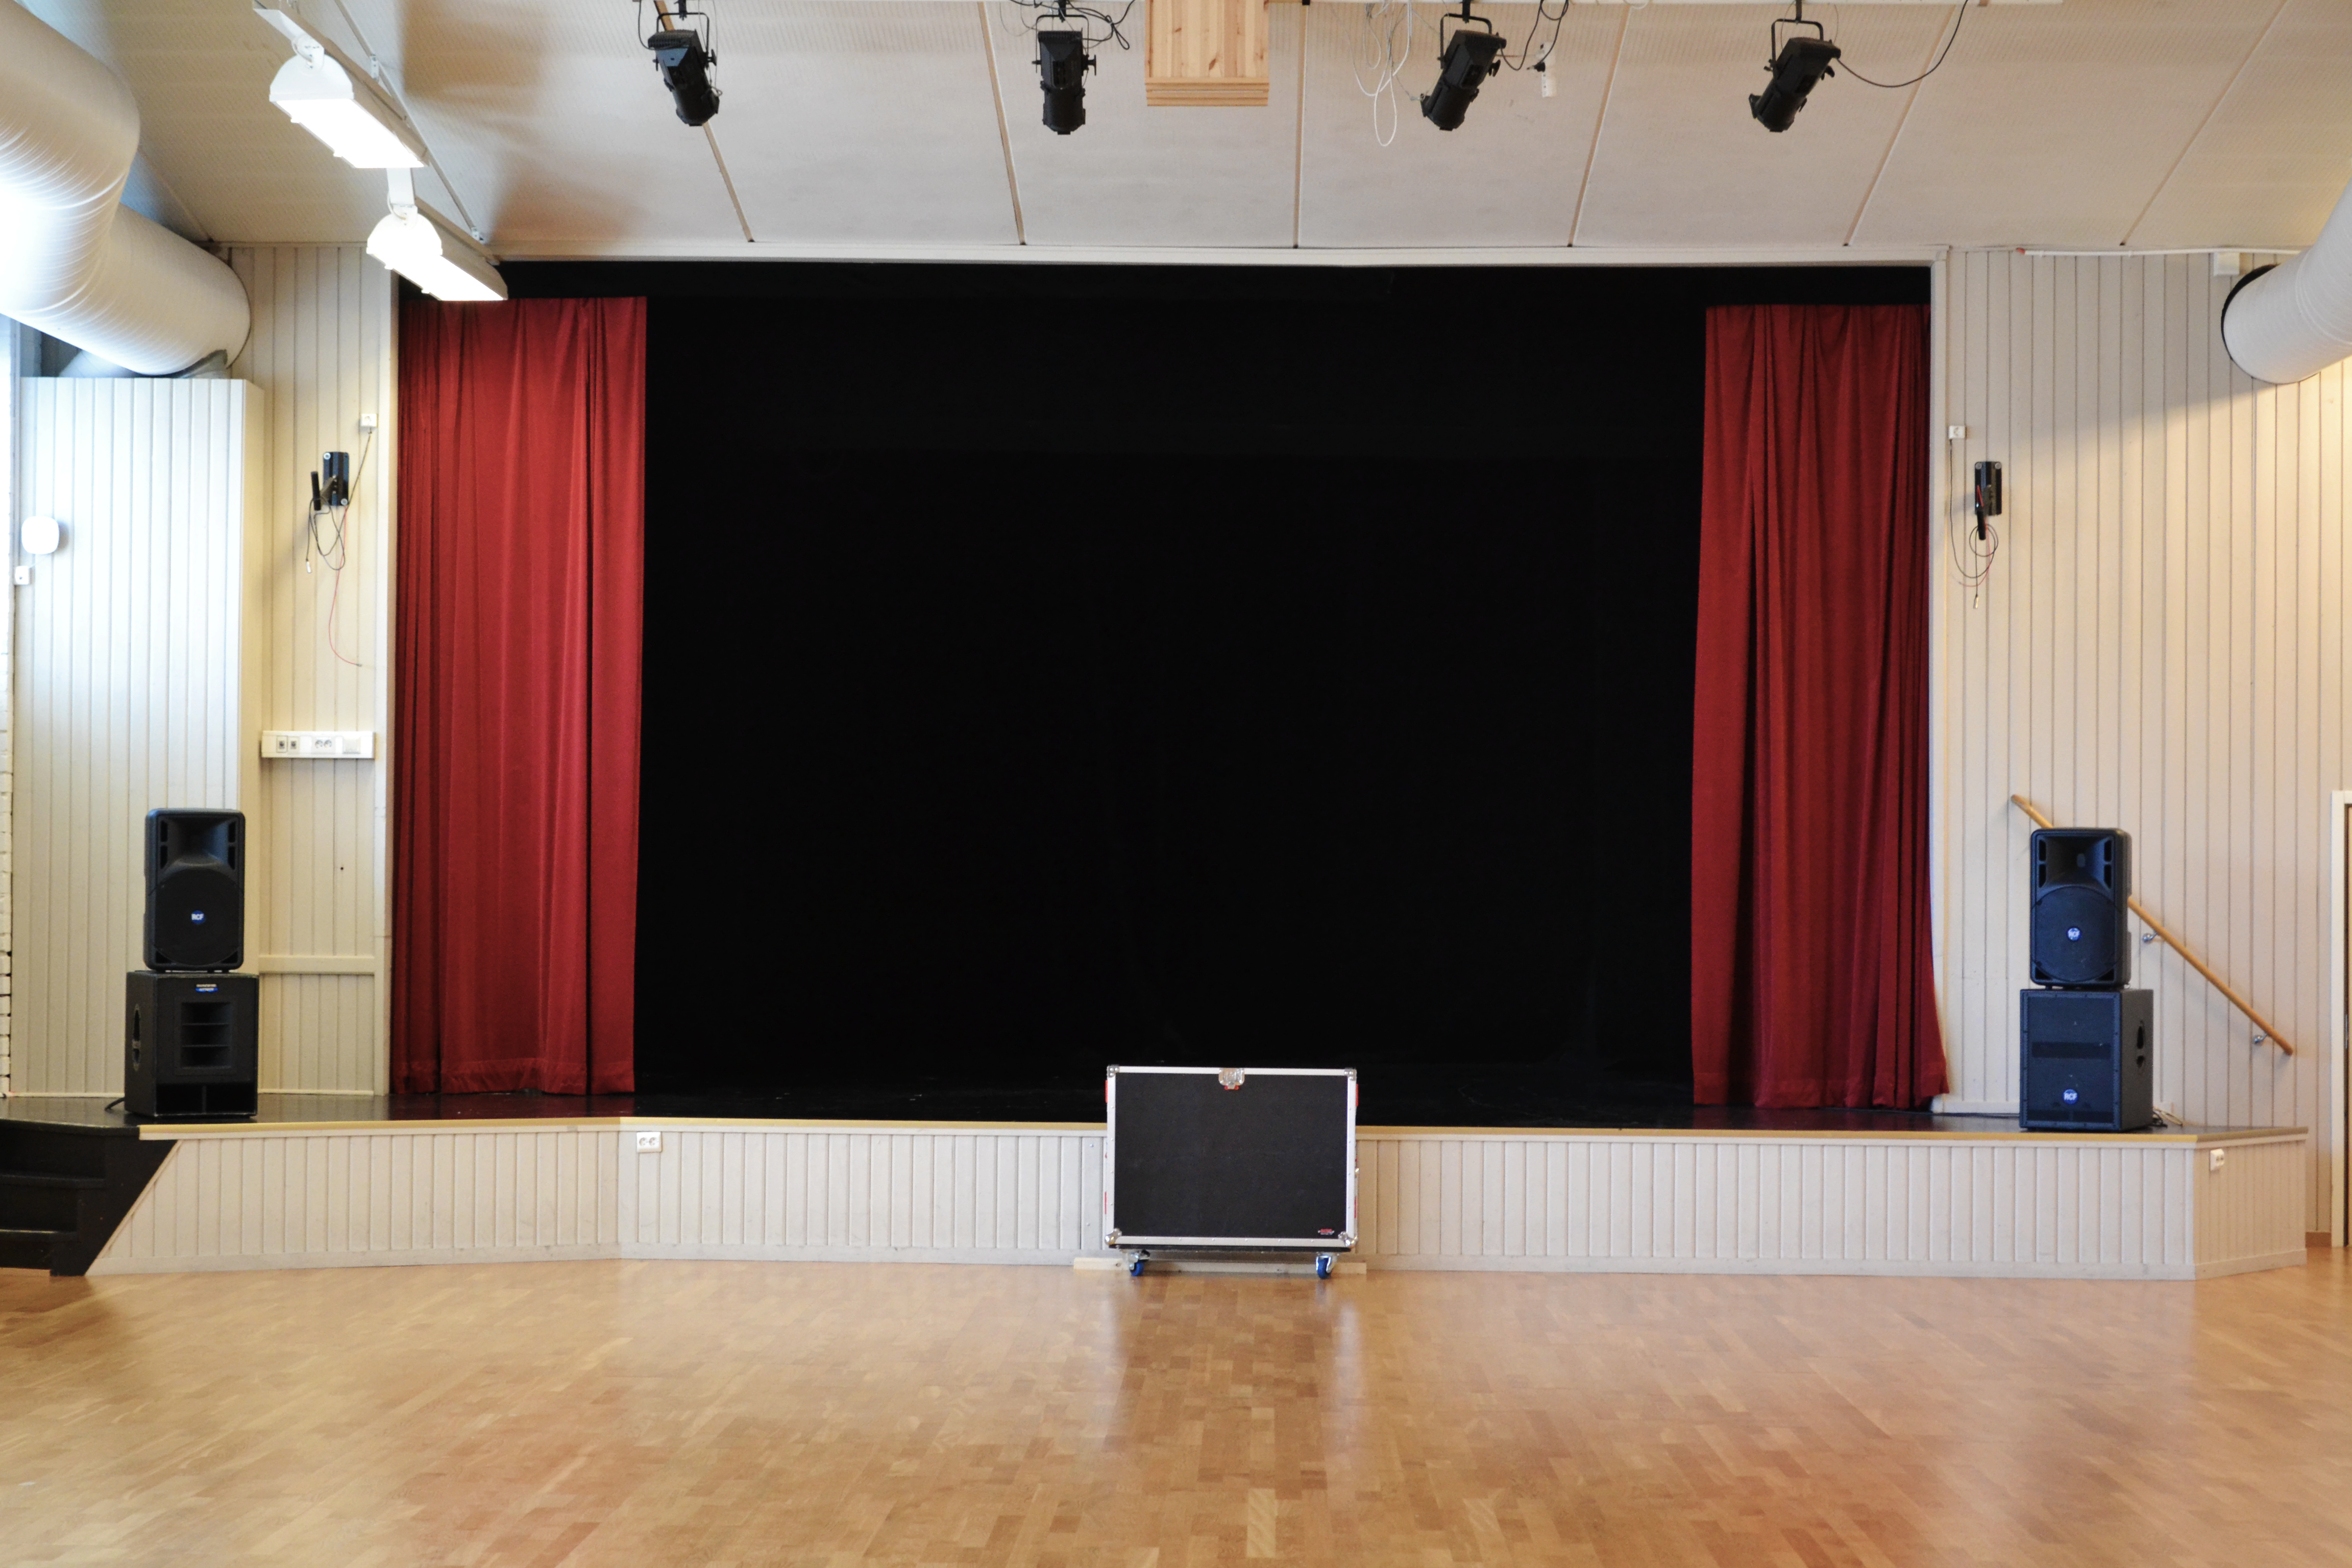 Överblicksbild över eventhallen med scen, ljudanläggning och blankt trägolv